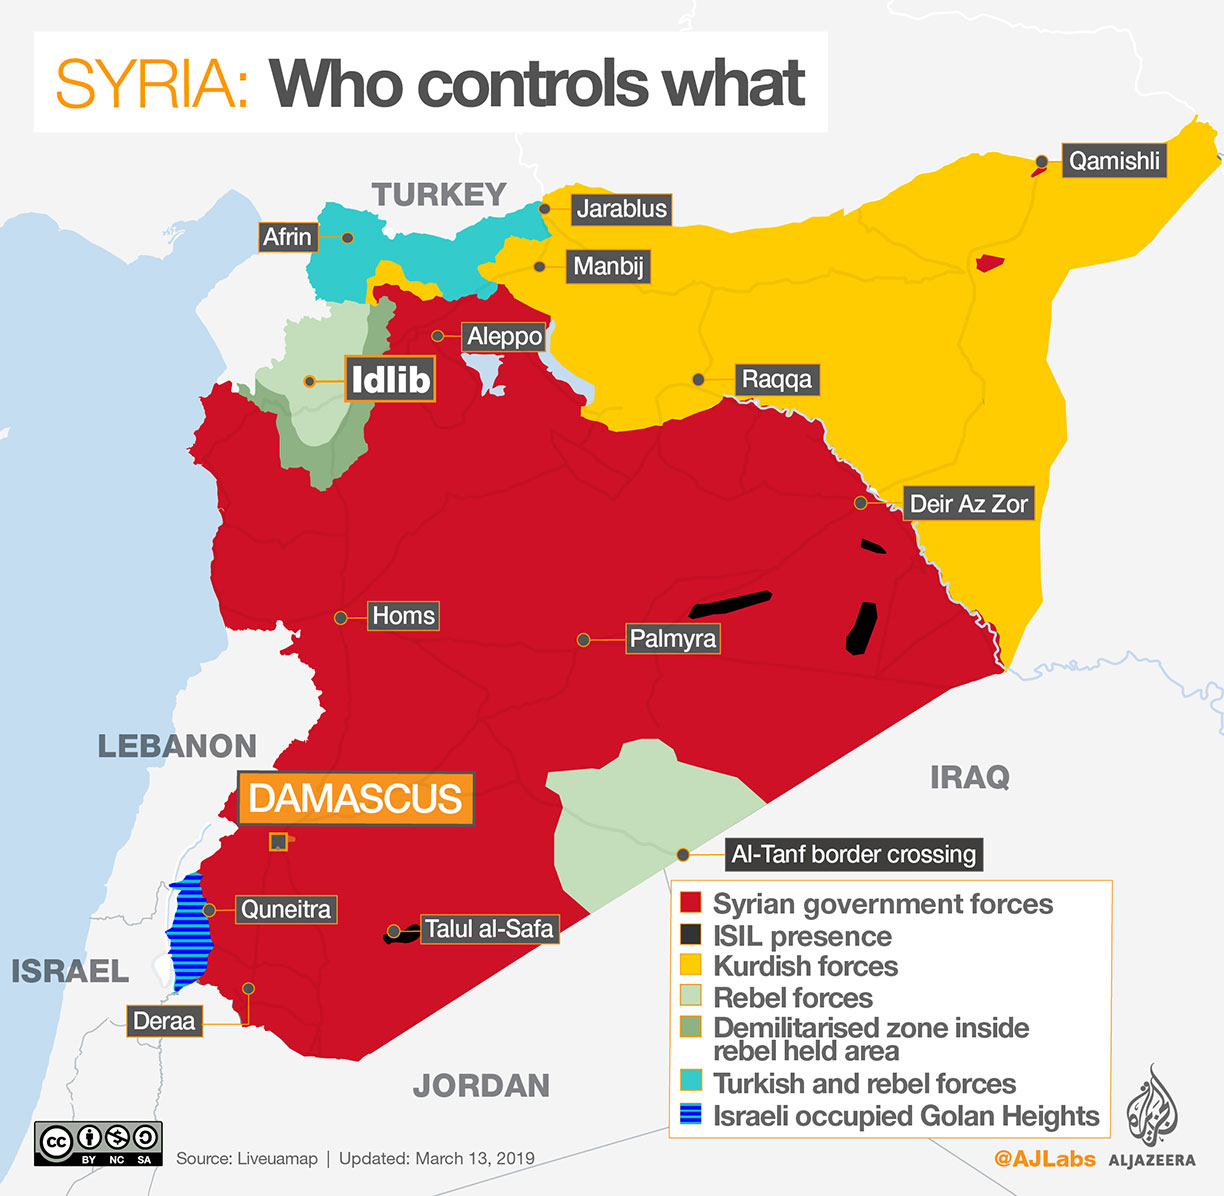 Szíria politikai térképe - pirossal a szíriai kormányerők által ellenőrzött területek láthatók, feketével az Iszlám Állam fennhatósága, sárgával a kurd erők, világoszölddel a lázadók által felügyelt régiók. Sötétzölddel egy demilitarizált terület a lázadók kezén lévő országrészben. Türkiz színnel jelölték a török és lázadó harcosok fennhatósága alatt álló részt. (Kék csíkos az Izrael és Szíria által is követelt, vitatott hovatartozású Golán-fennsík.) A térkép forrása: Al Jazeera és liveuamap